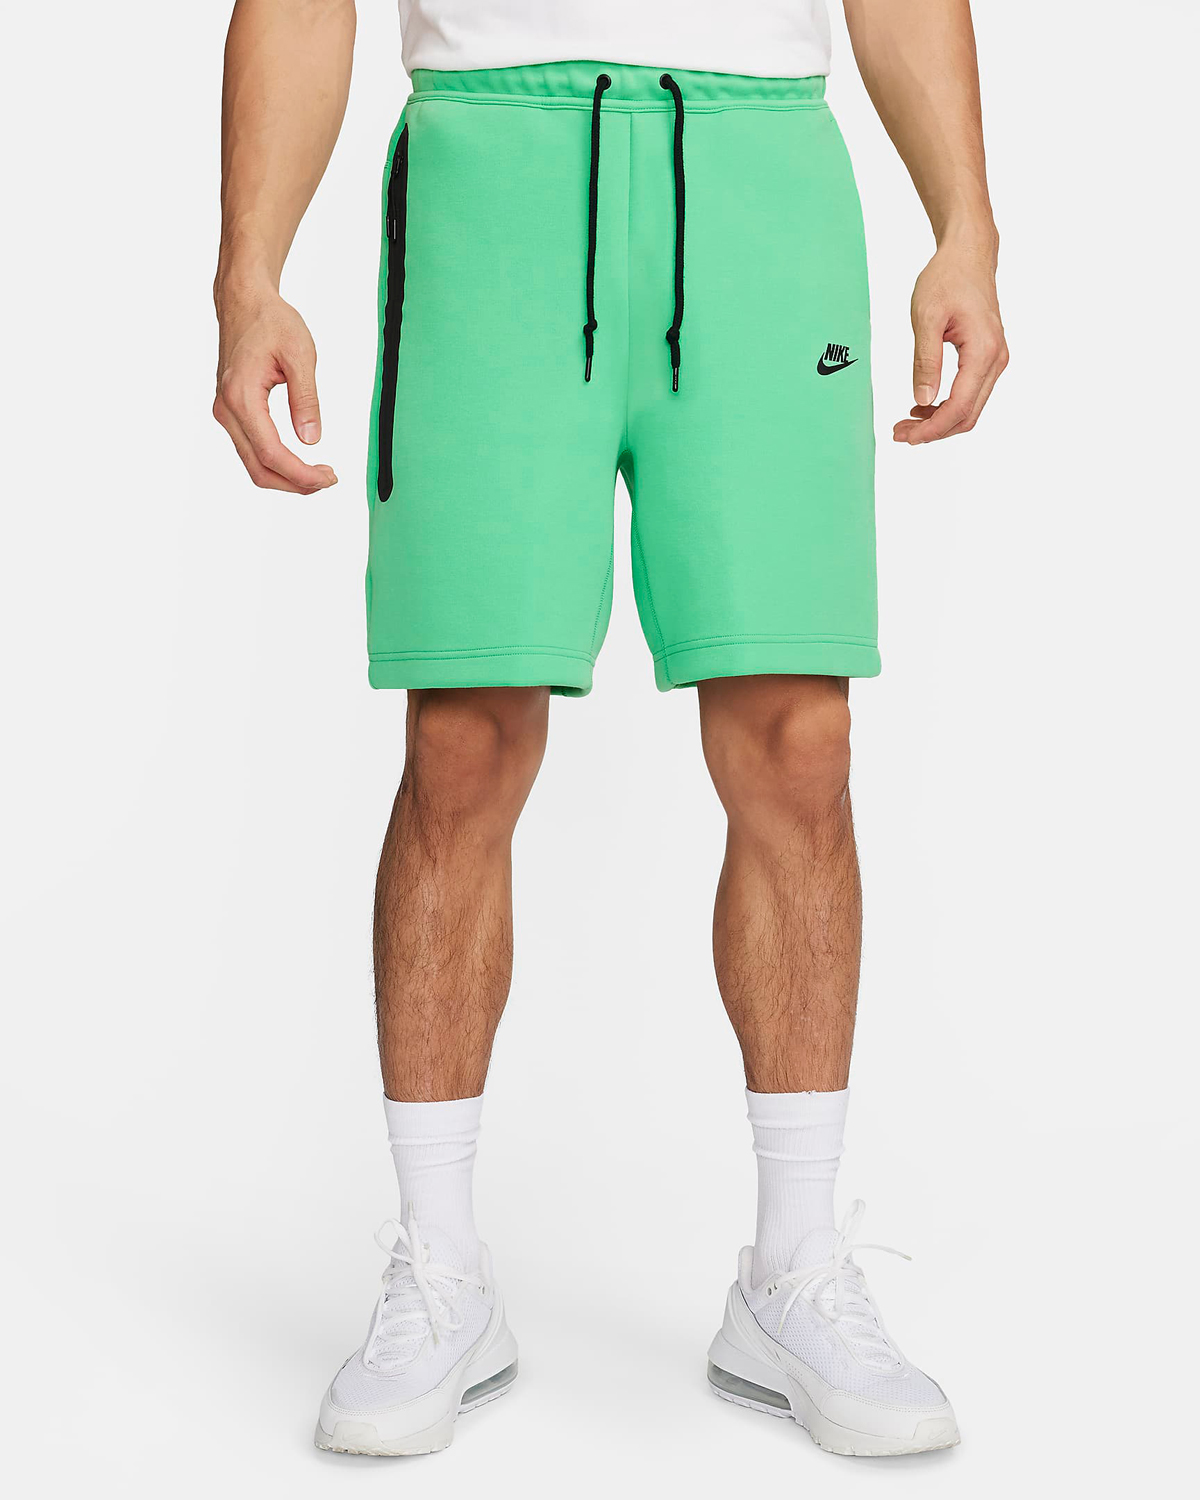 Nike-Tech-Fleece-Shorts-Green-Glow